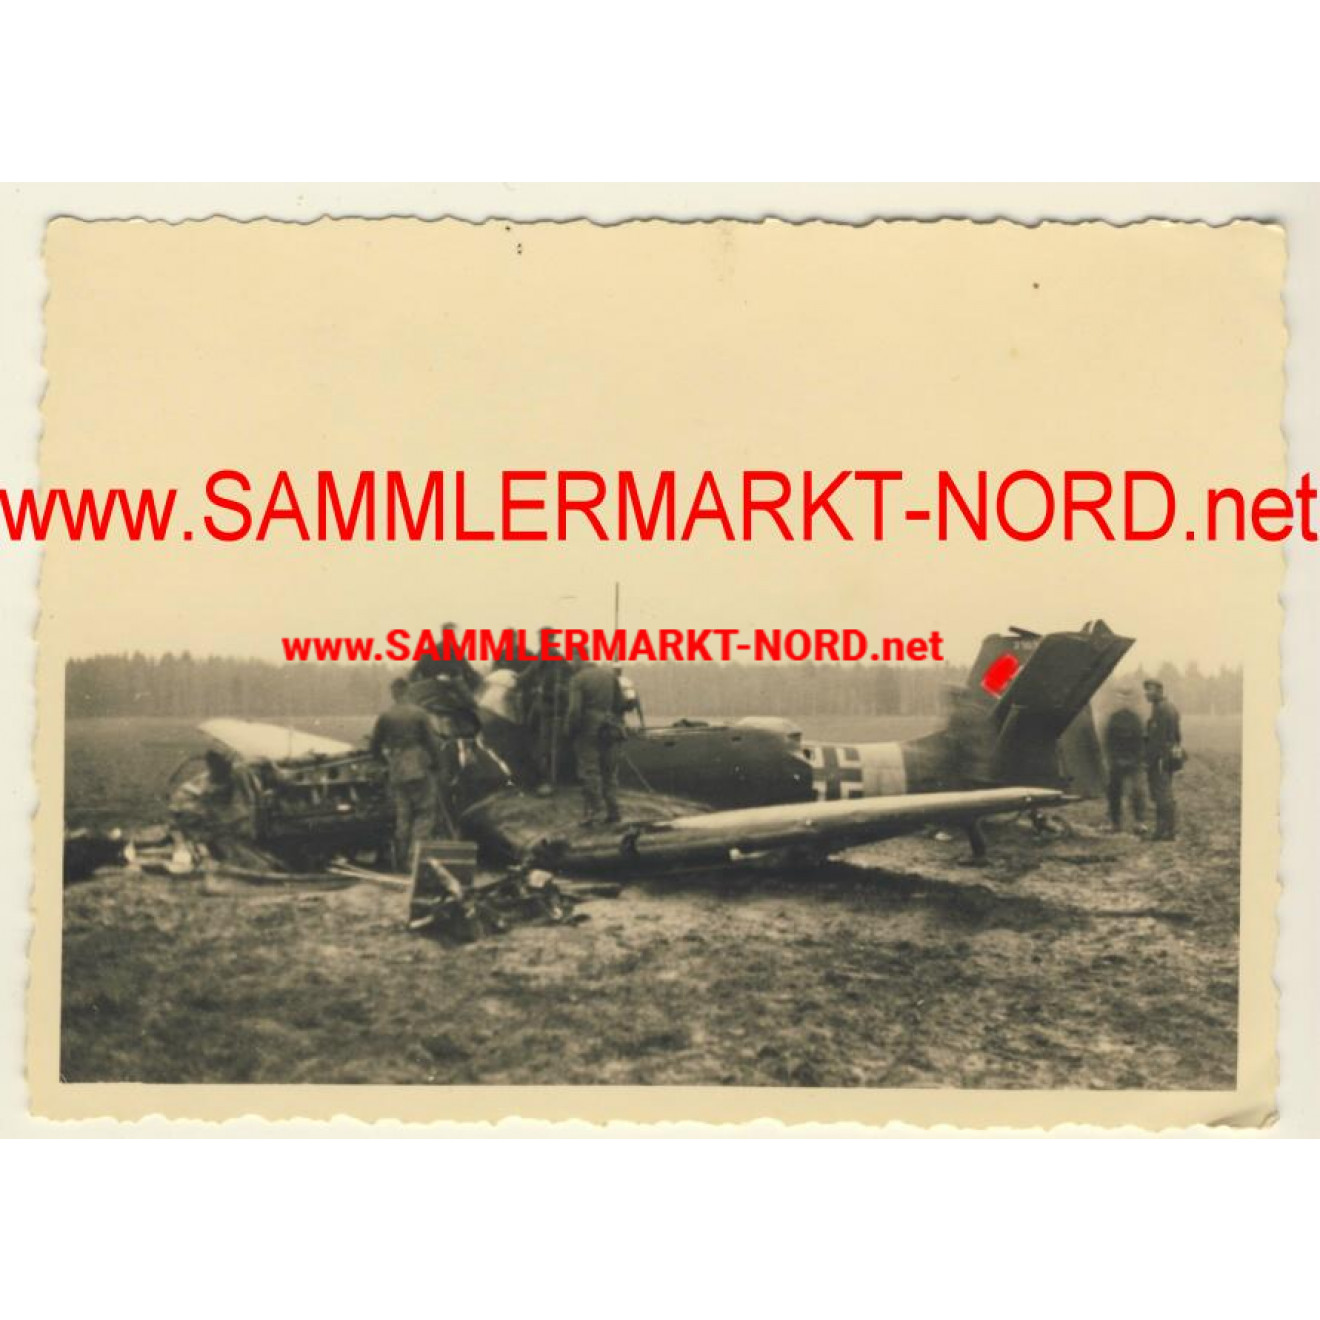 Abgestürztes deutsches Flugzeug Ju 87